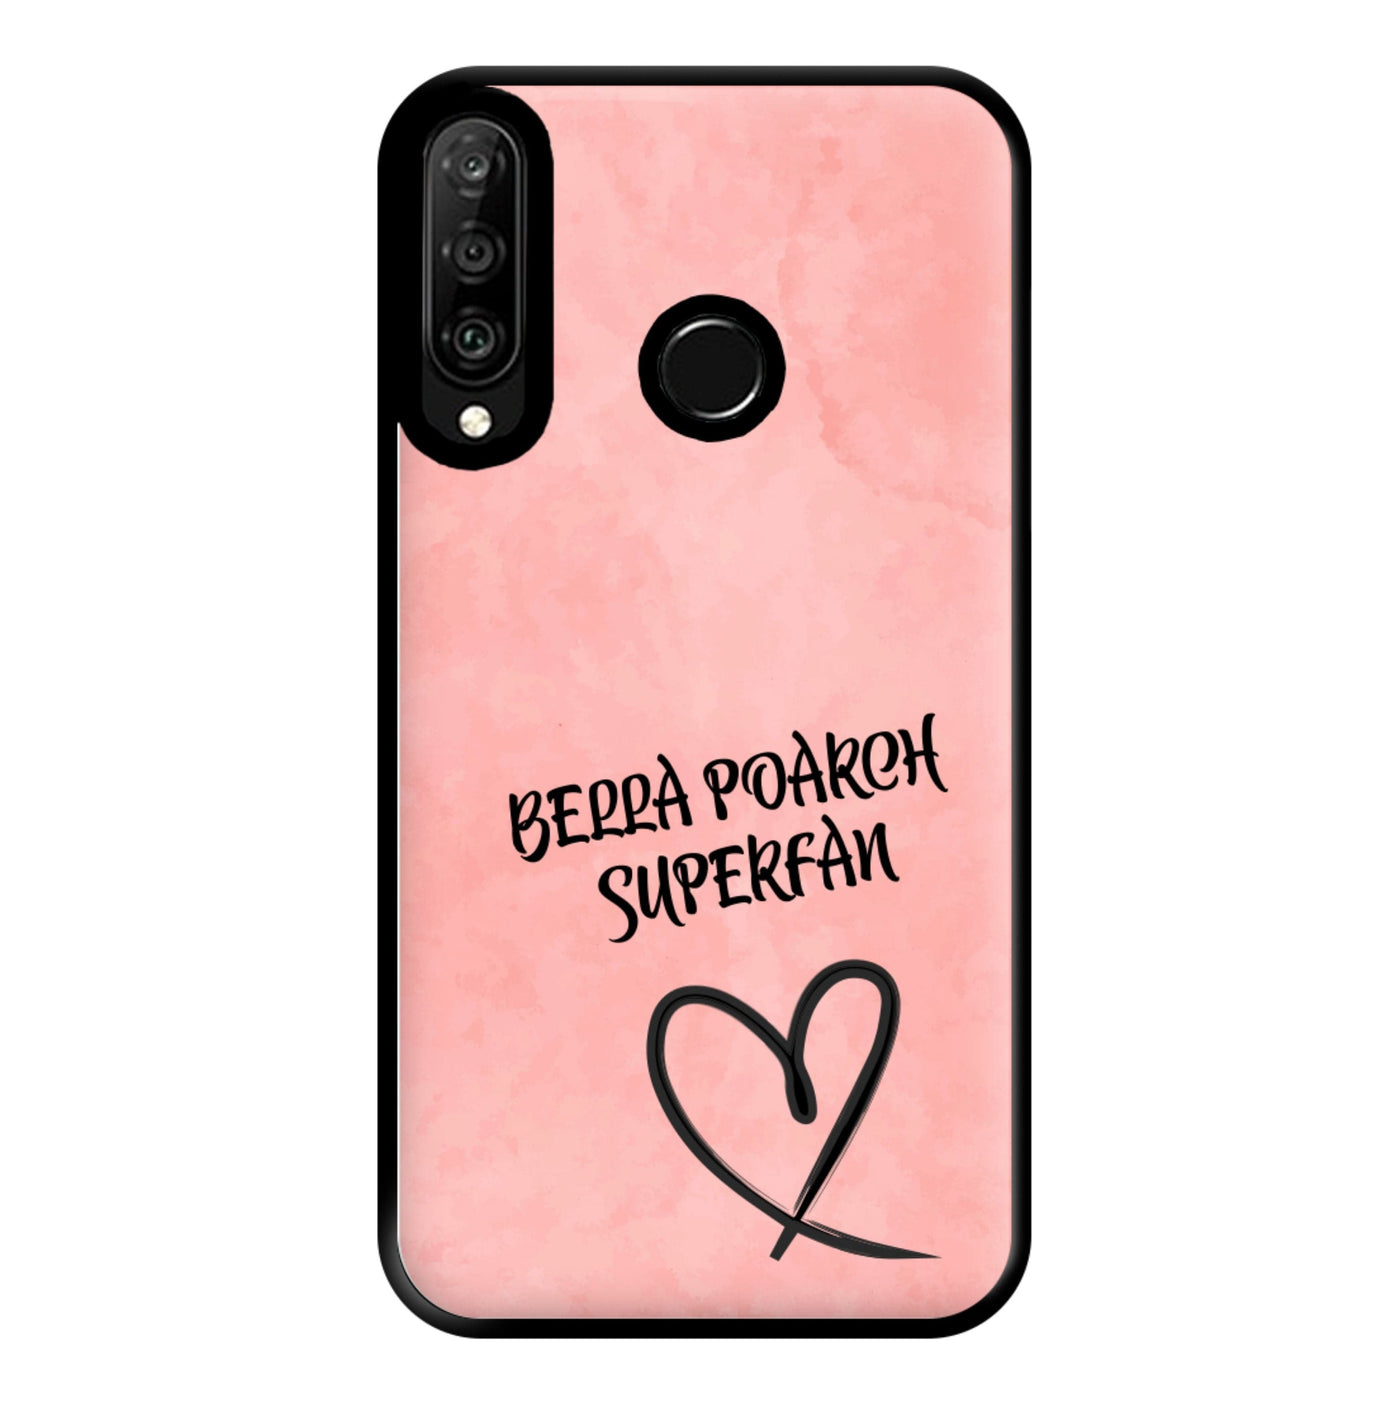 Bella Poarch Superfan Phone Case